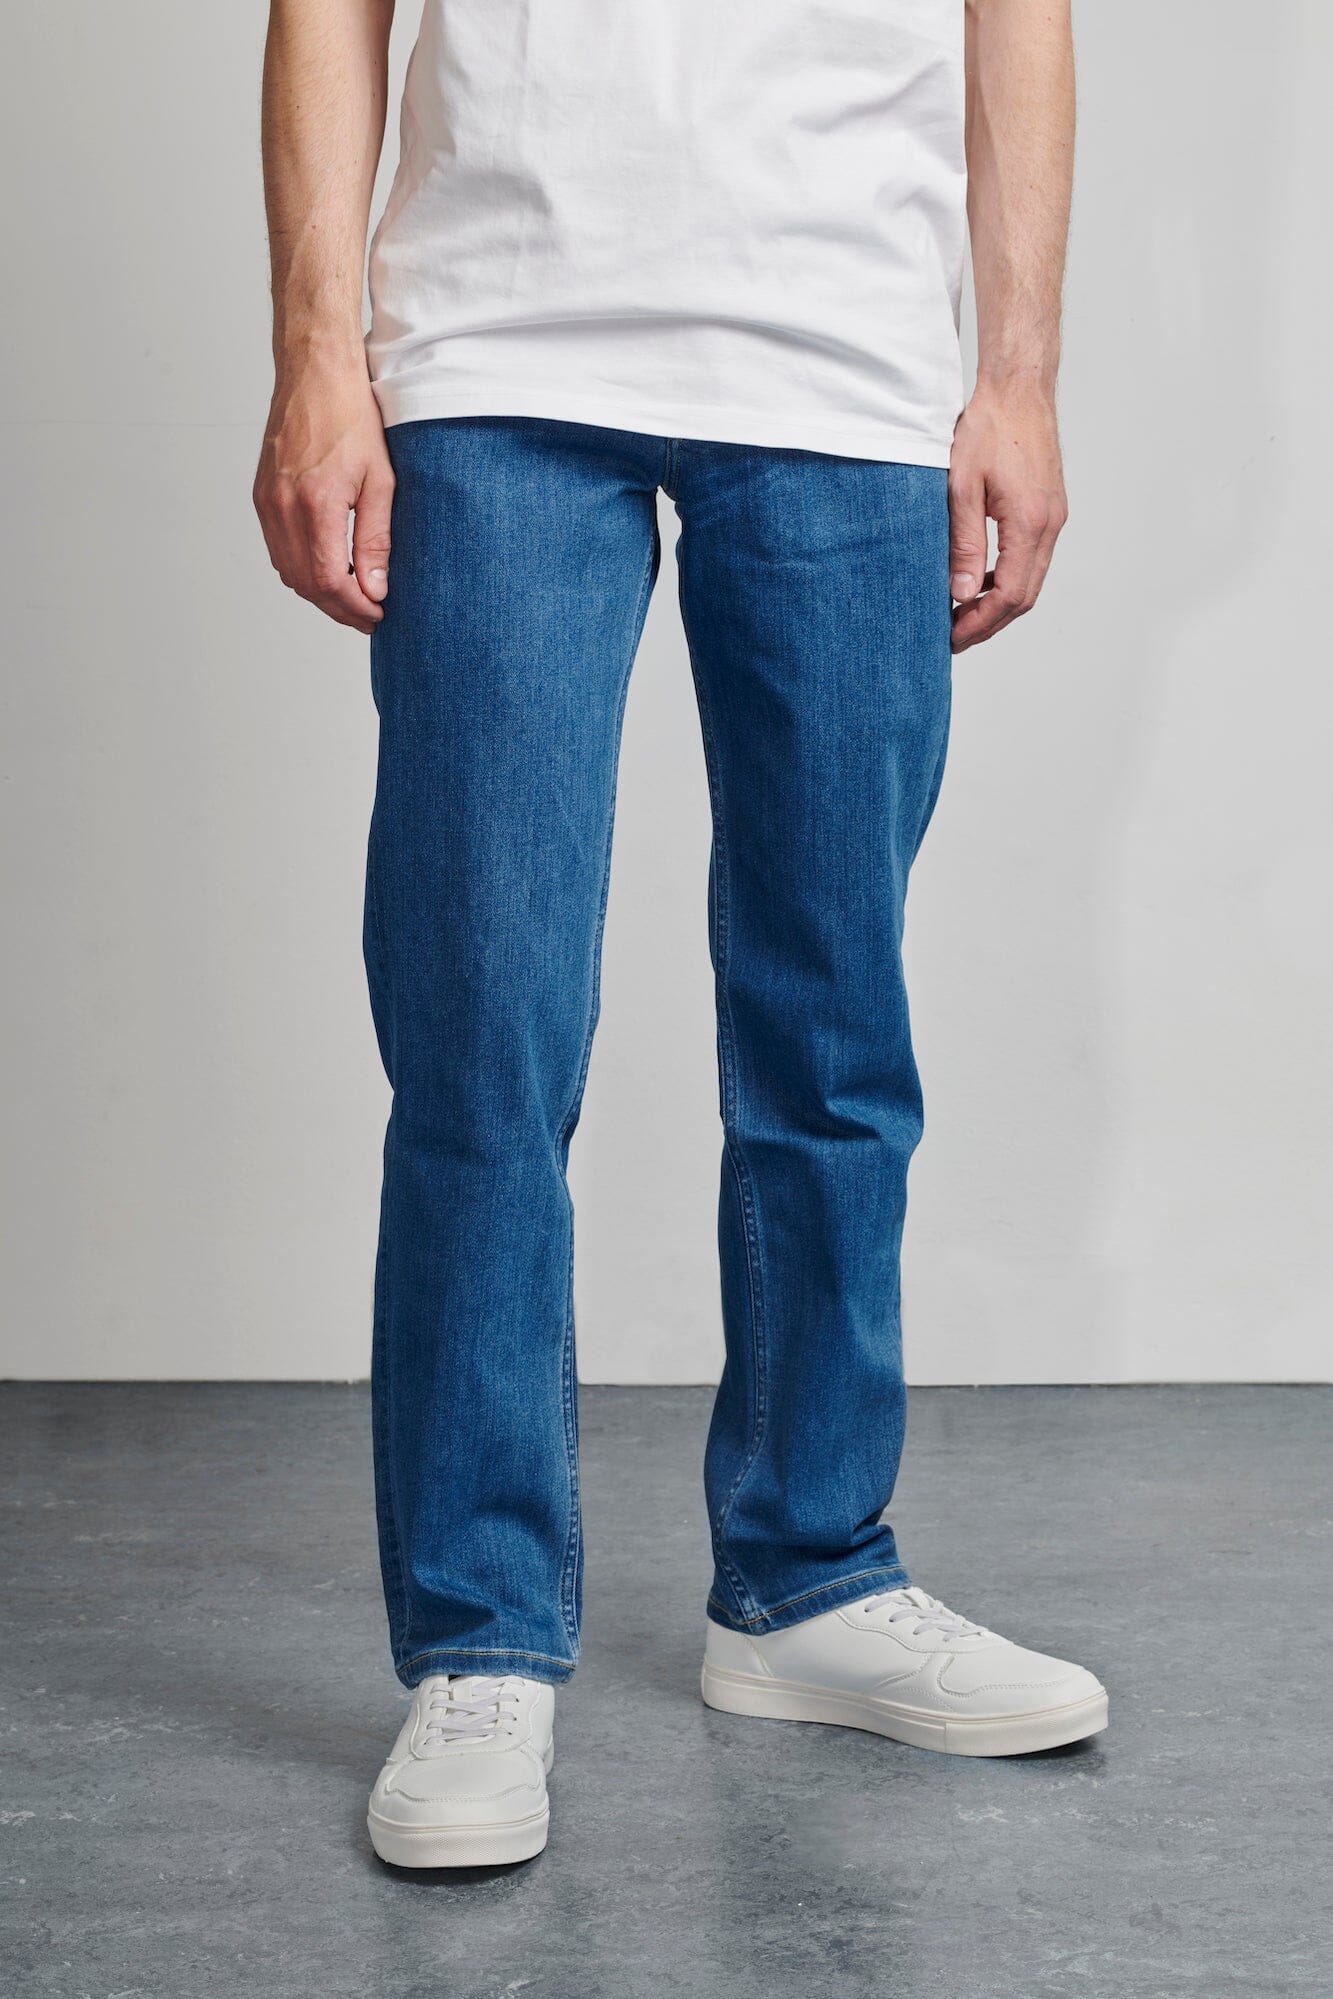 Jeans herre - kvalitetsjeans til mænd |